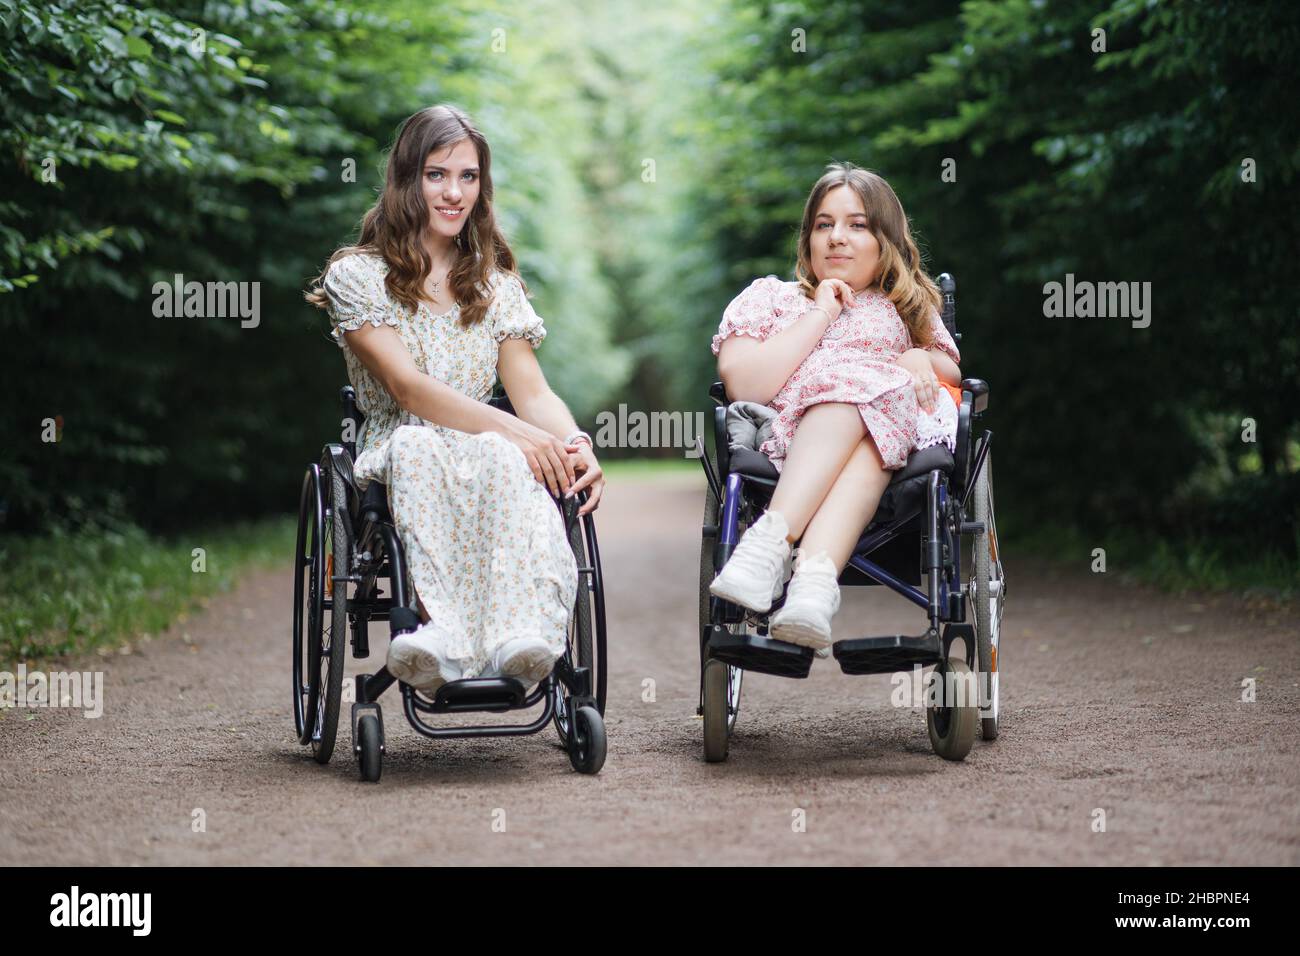 Schöne behinderte Frauen in Sommerkleidern mit Blumenmuster entspannen  zusammen an der frischen Luft. Zwei Freundinnen, die Rollstühle benutzen,  lächeln und blicken in die Kamera Stockfotografie - Alamy